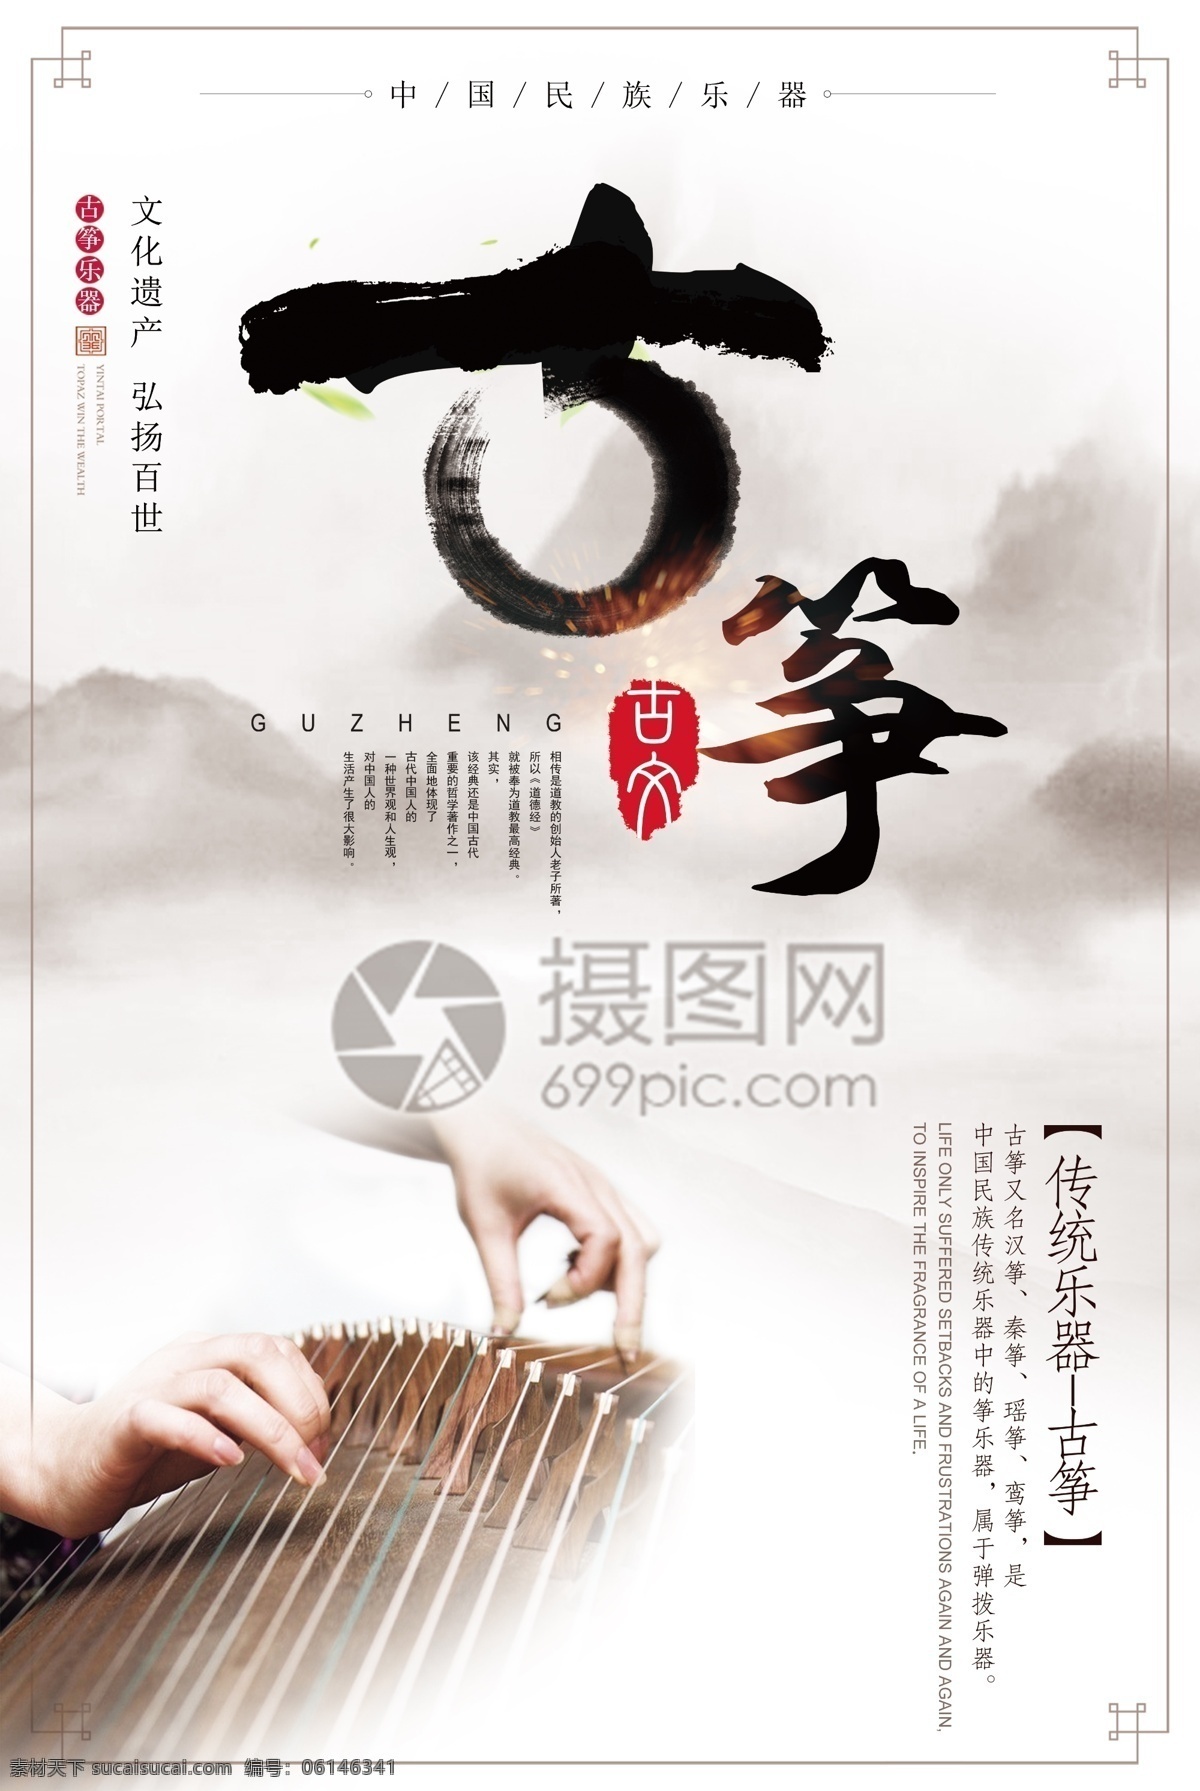 中国 风 古筝 海报 古风 水墨 印章 弹琴 山水 中国风 古琴 乐器 古典